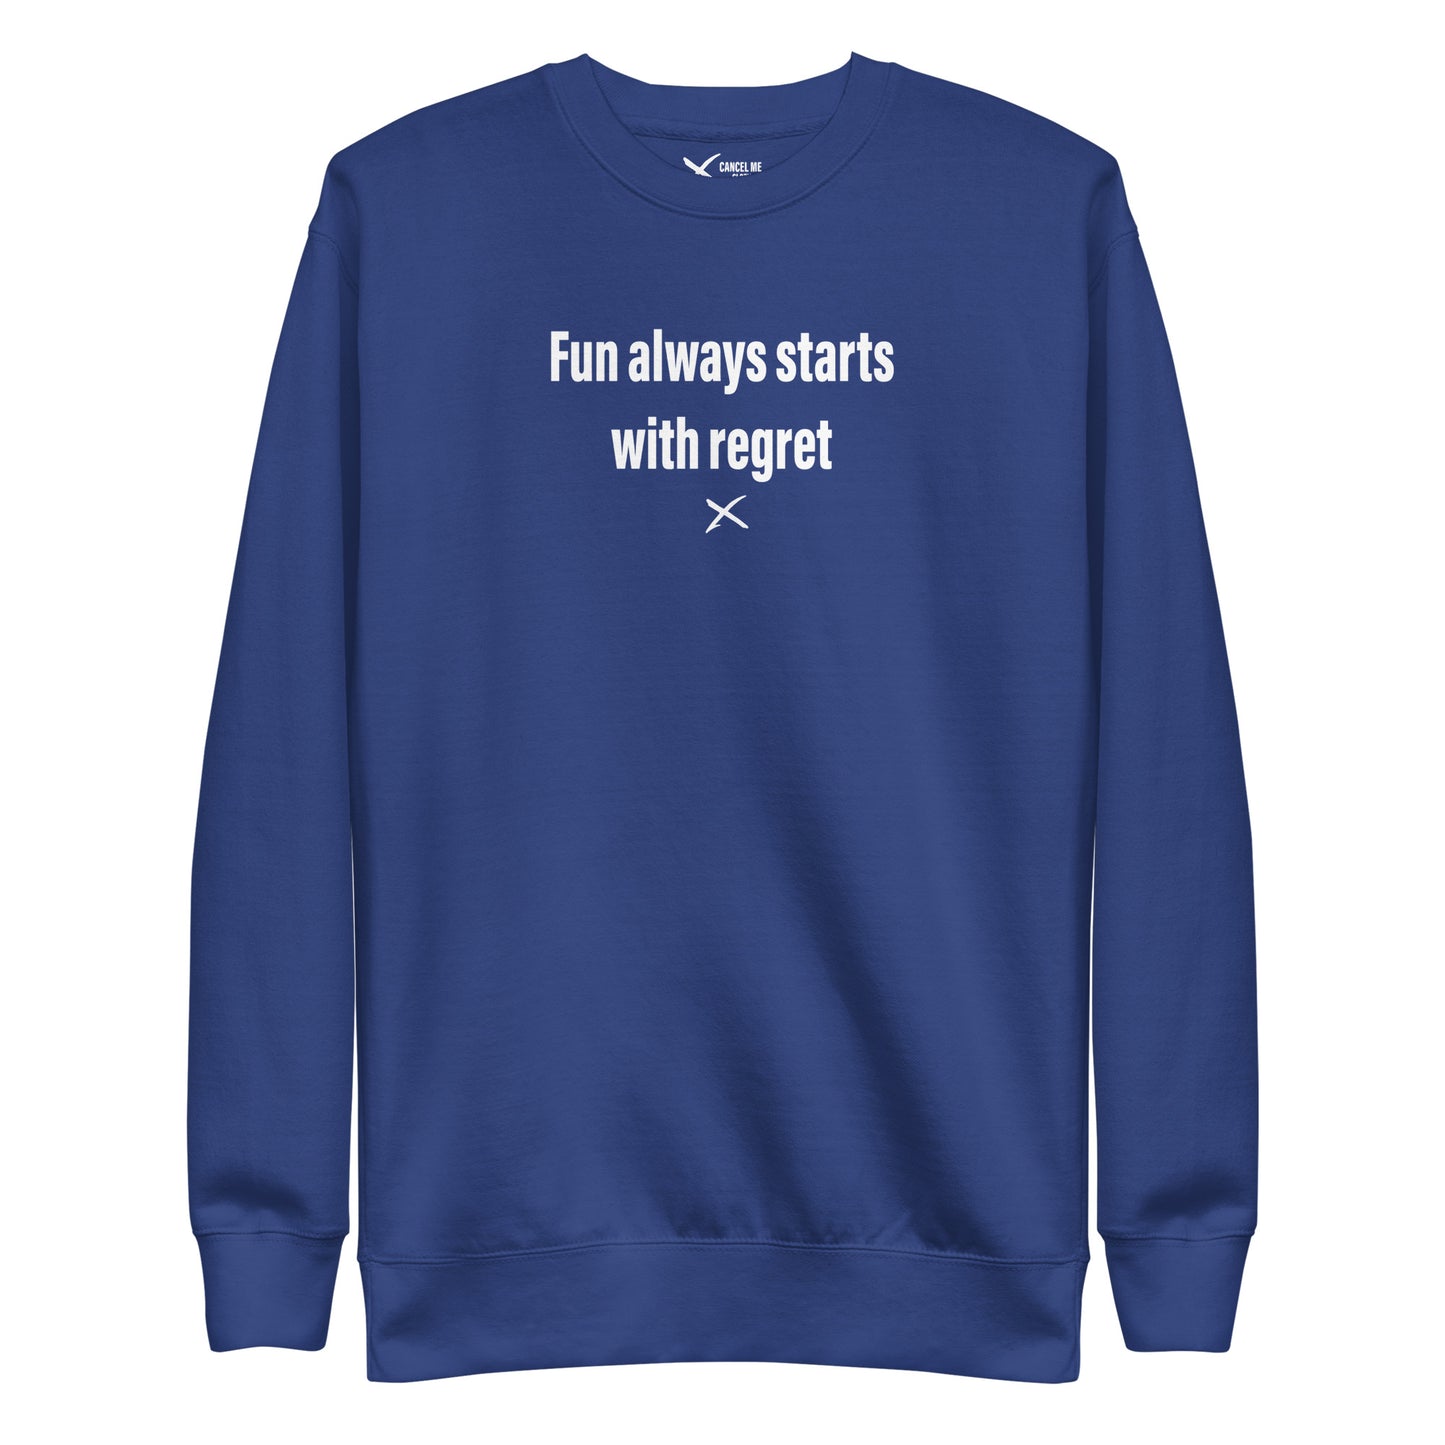 Fun always starts with regret - Sweatshirt